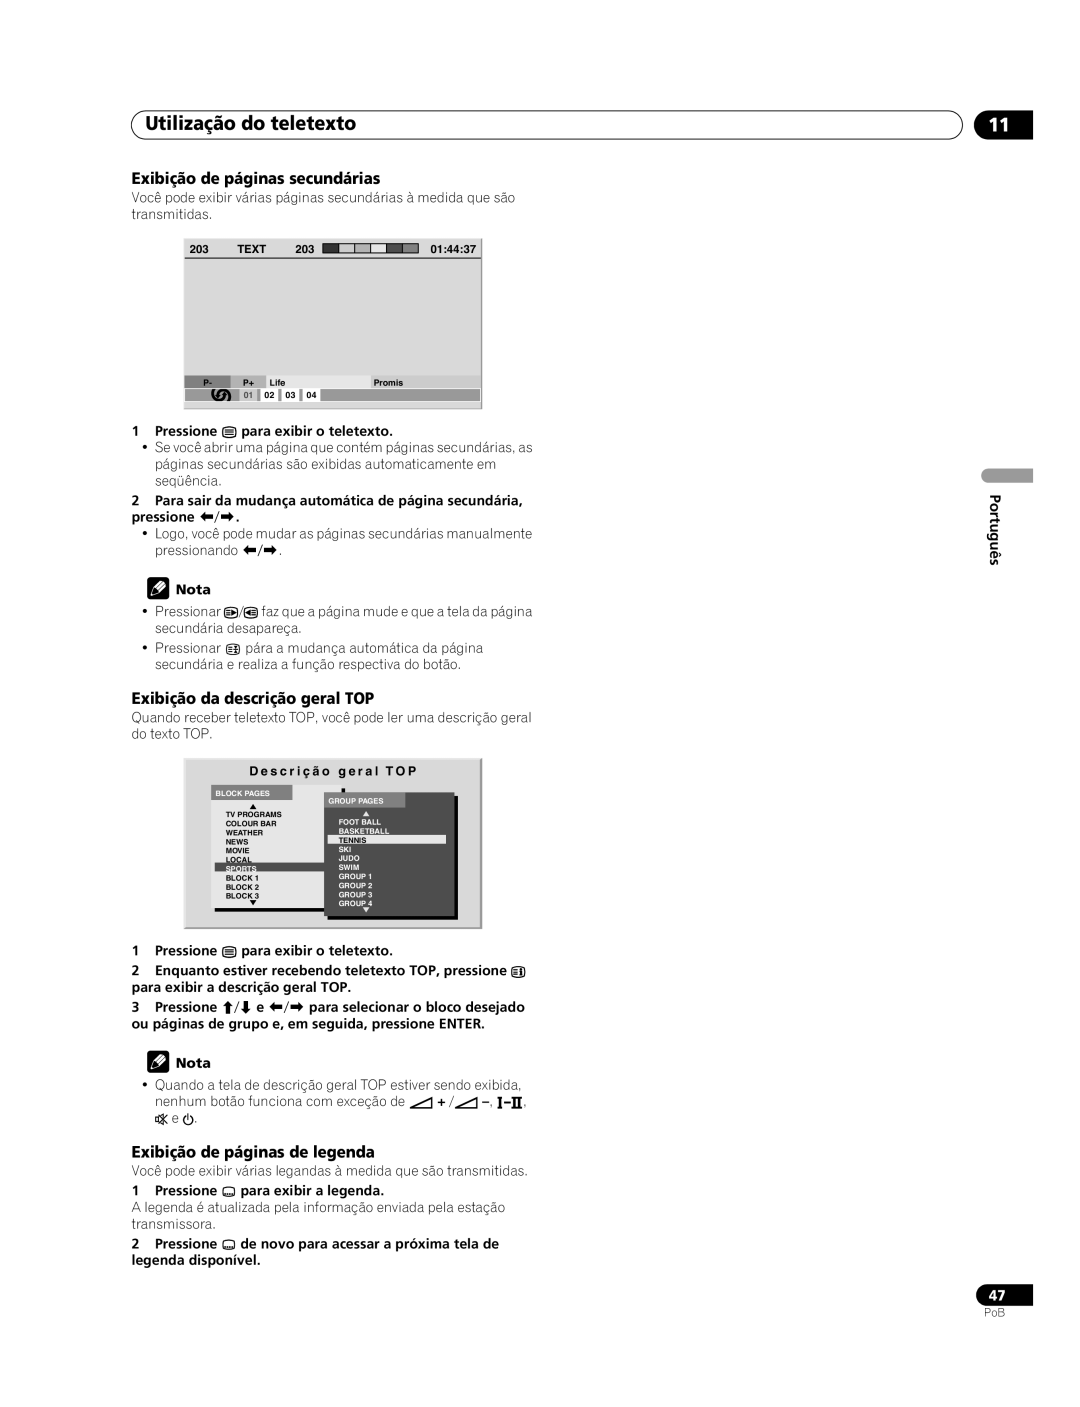 Pioneer PDP-507XG Utilização do teletexto, Exibição de páginas secundárias, Exibição da descrição geral TOP, Português 